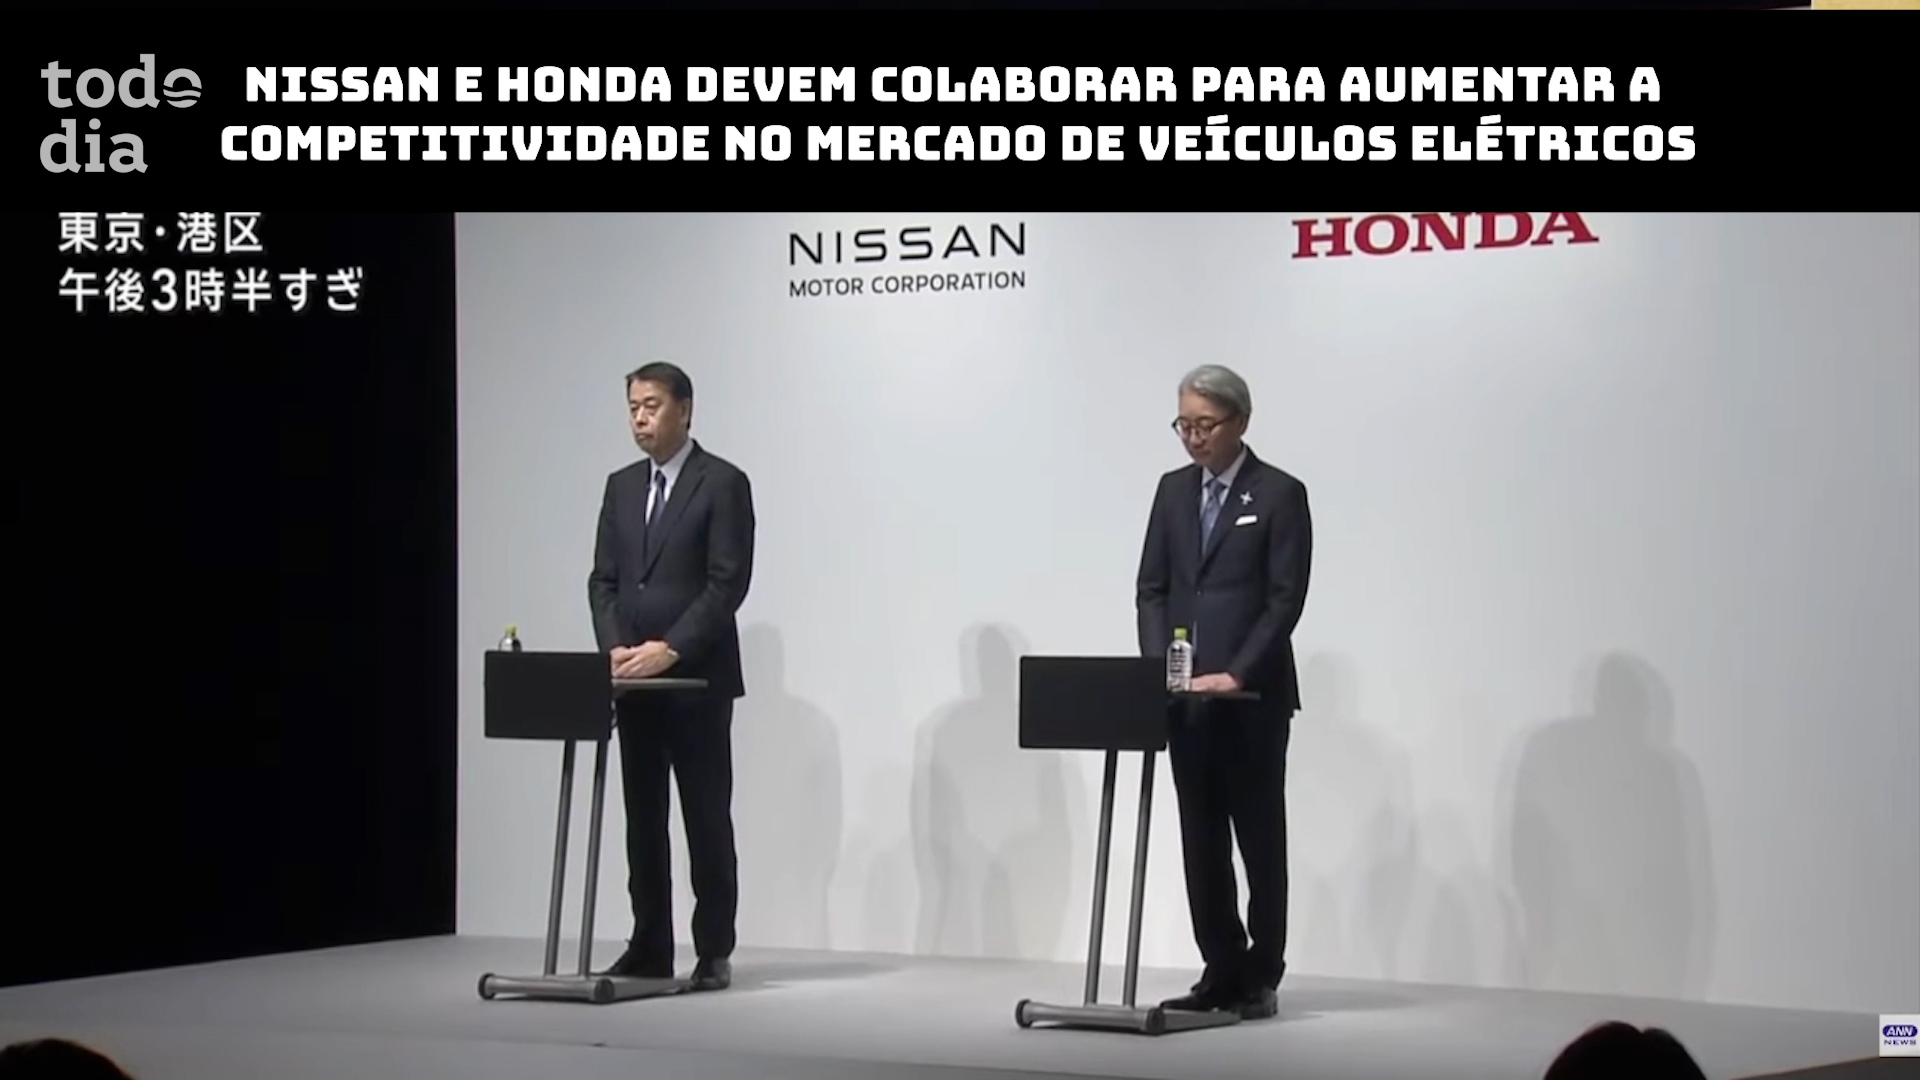 Nissan e Honda devem colaborar para aumentar a competitividade no mercado de veículos elétricos